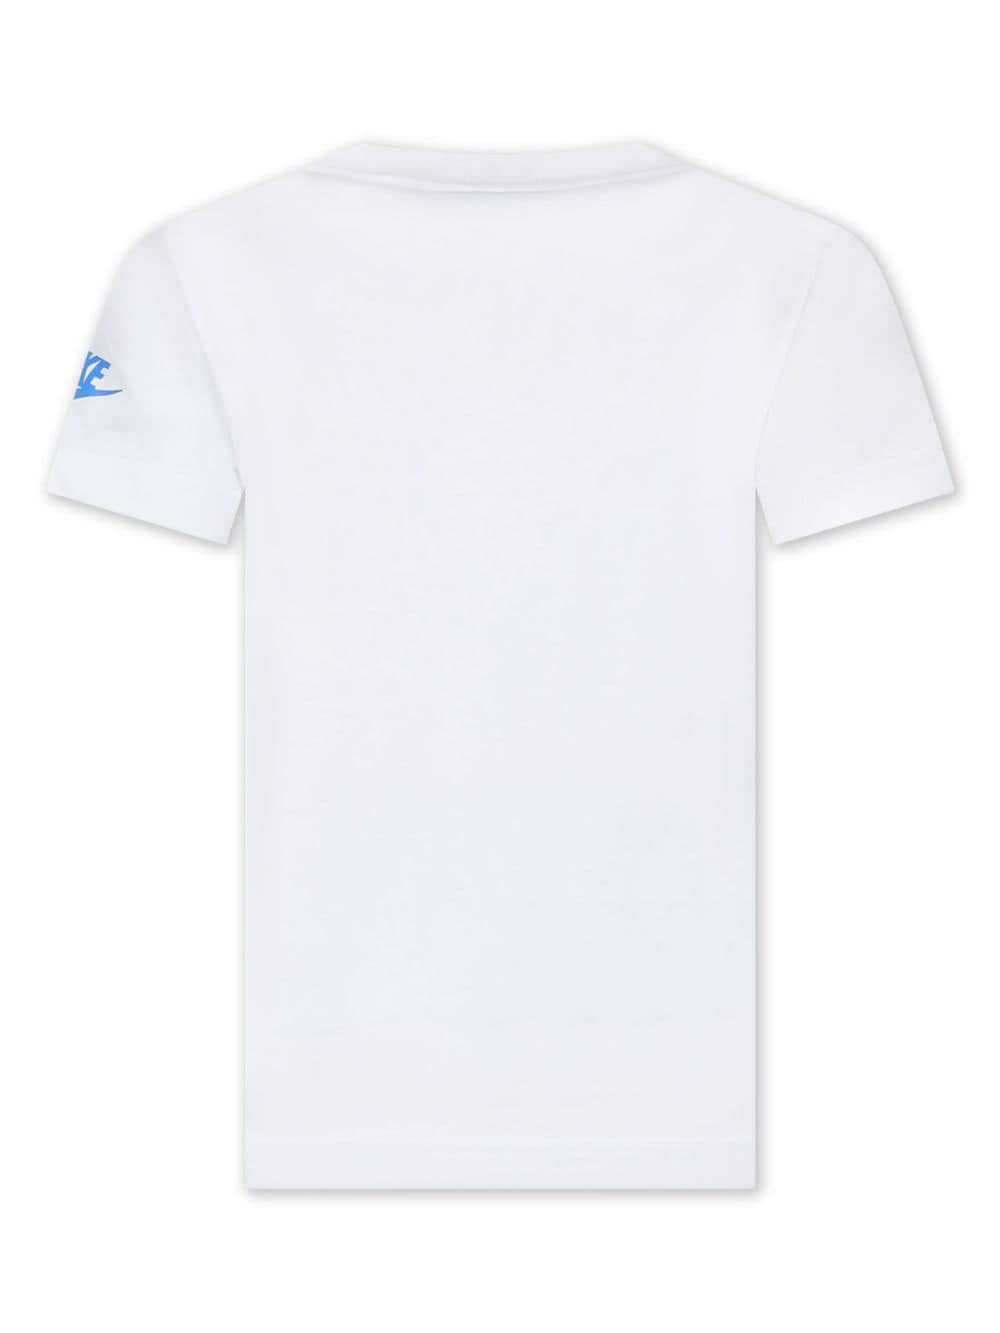 Nike Kids T-shirt met grafische print - Wit